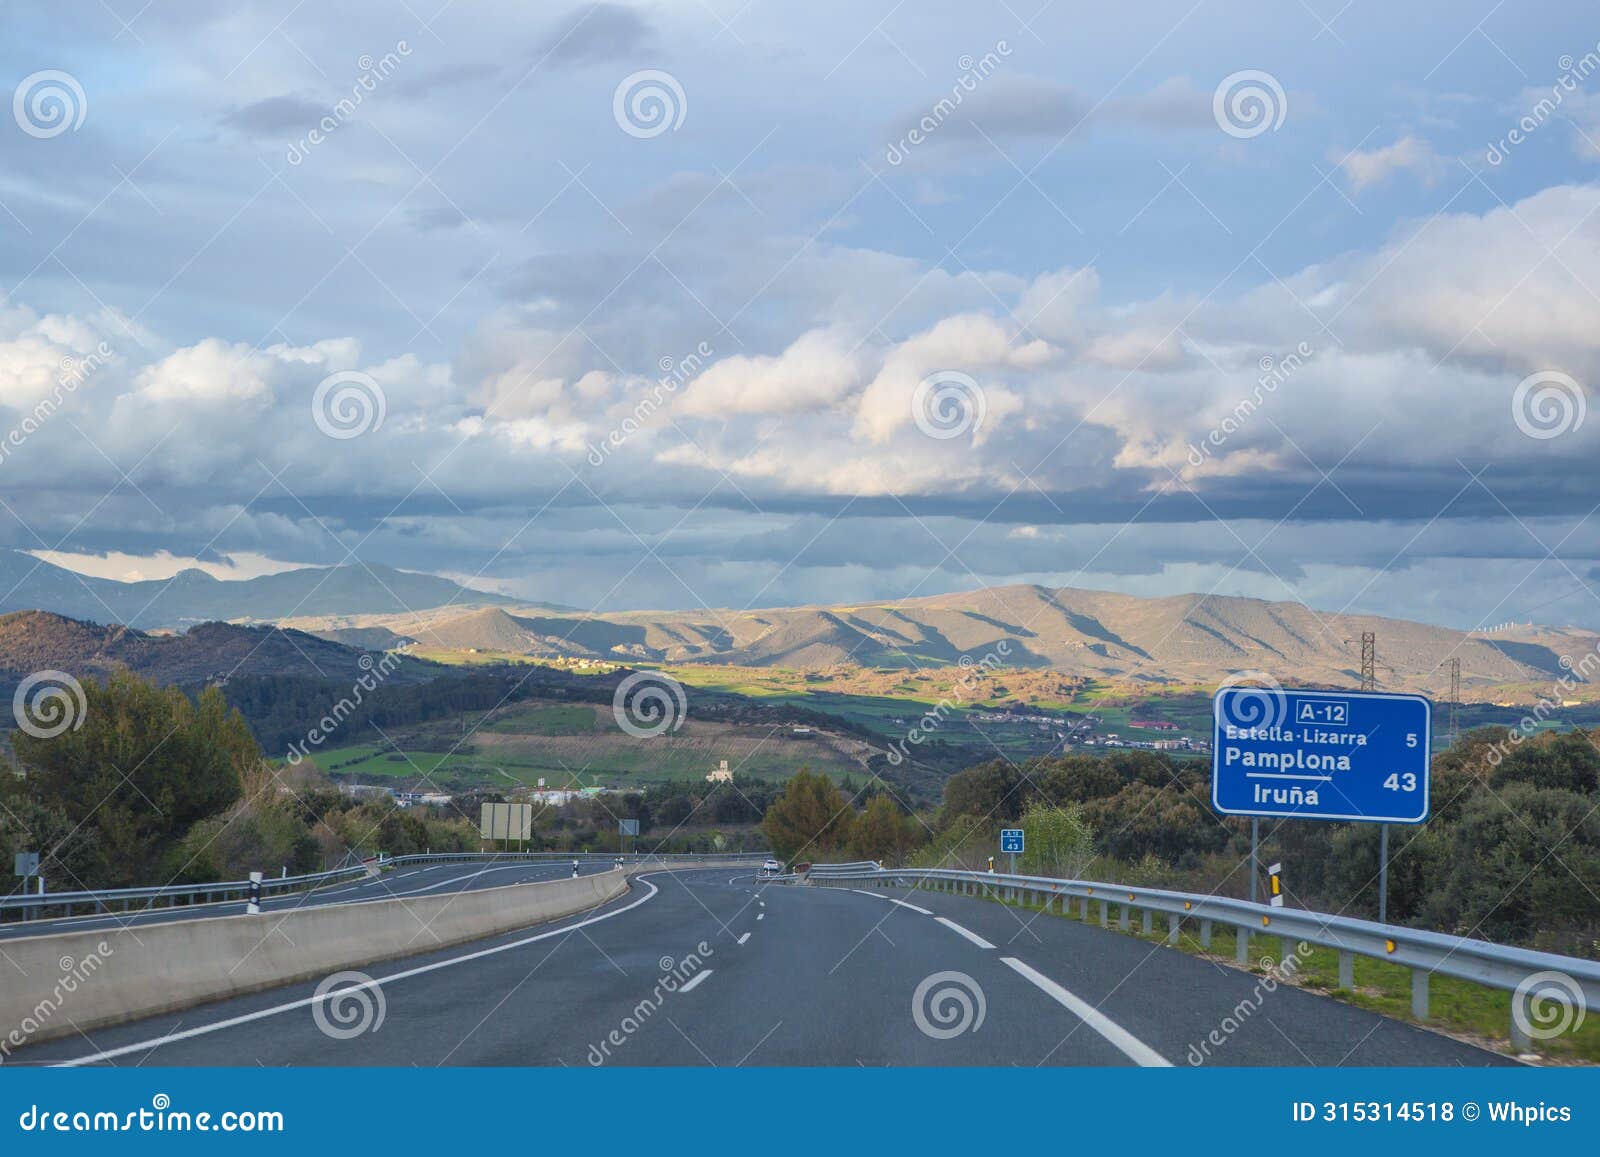 driving along a-12 highway. also known as autovia del camino de santiago